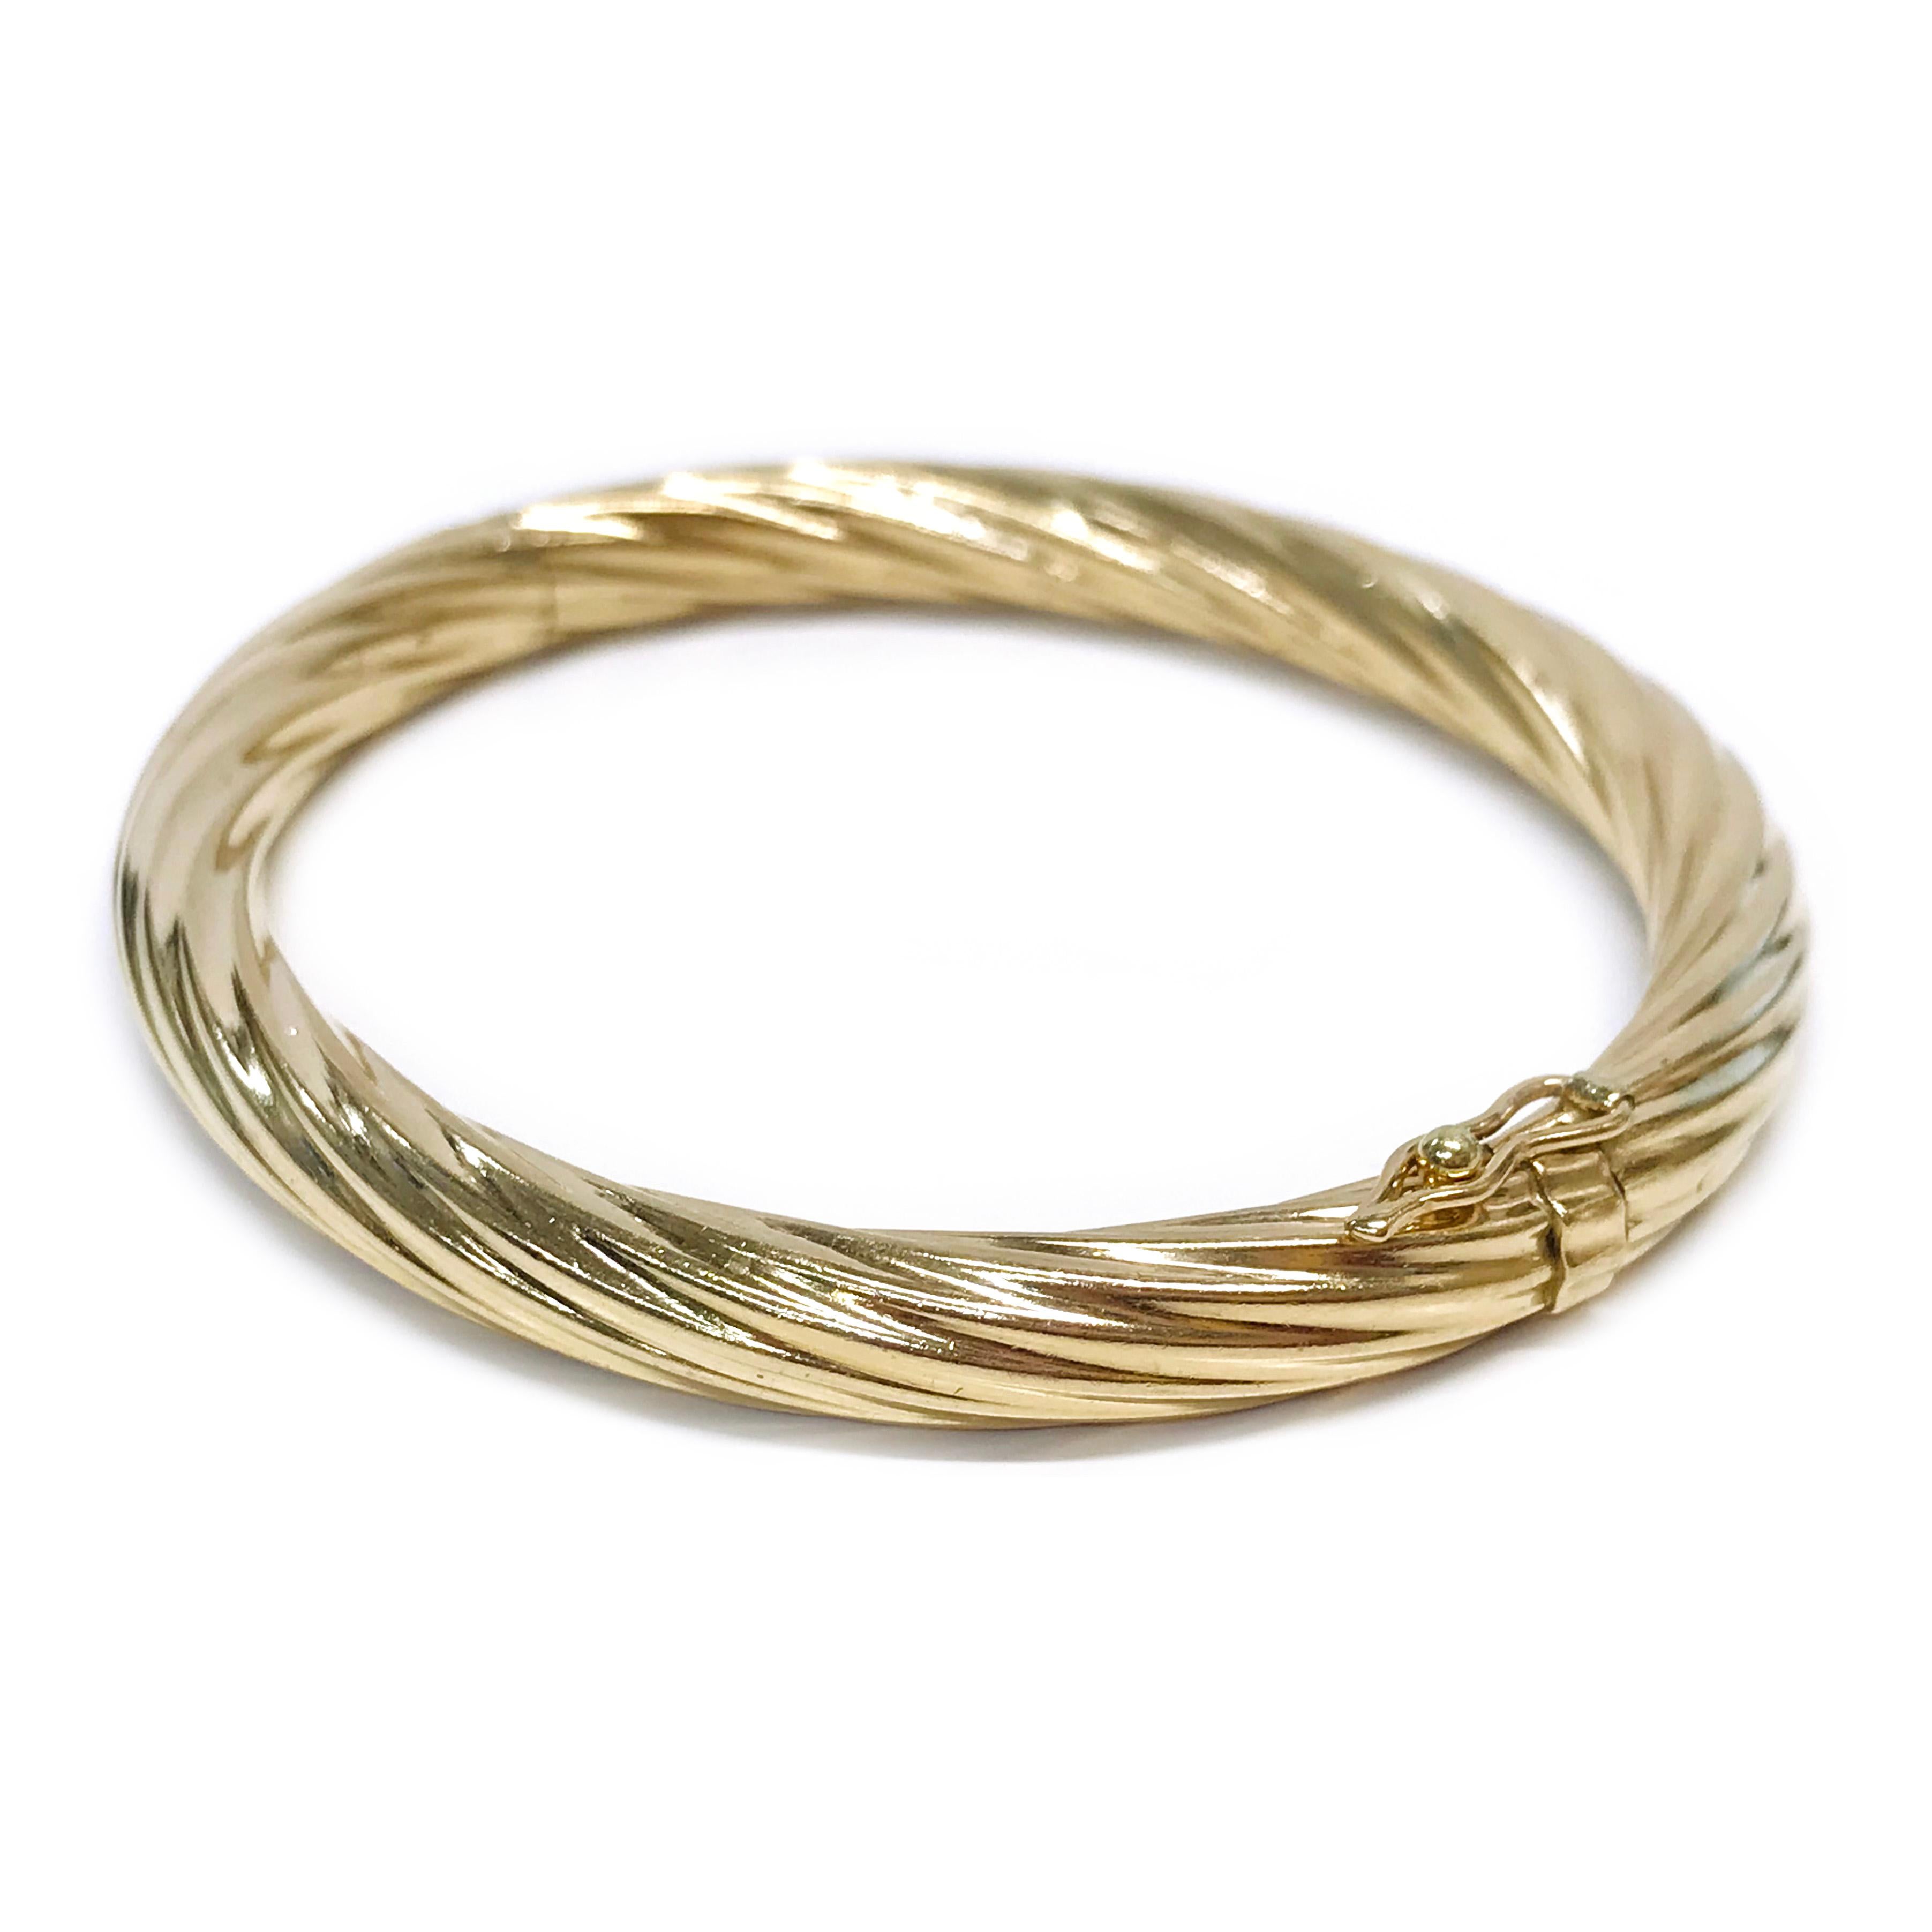 Bracelet câble en or jaune 14 carats avec charnière. Le bracelet classique en câble est semi-ovale avec une largeur de 6,2 mm. Le fermoir porte la marque de fabrication B. Le poids total en or du bracelet est de 16,7 grammes.